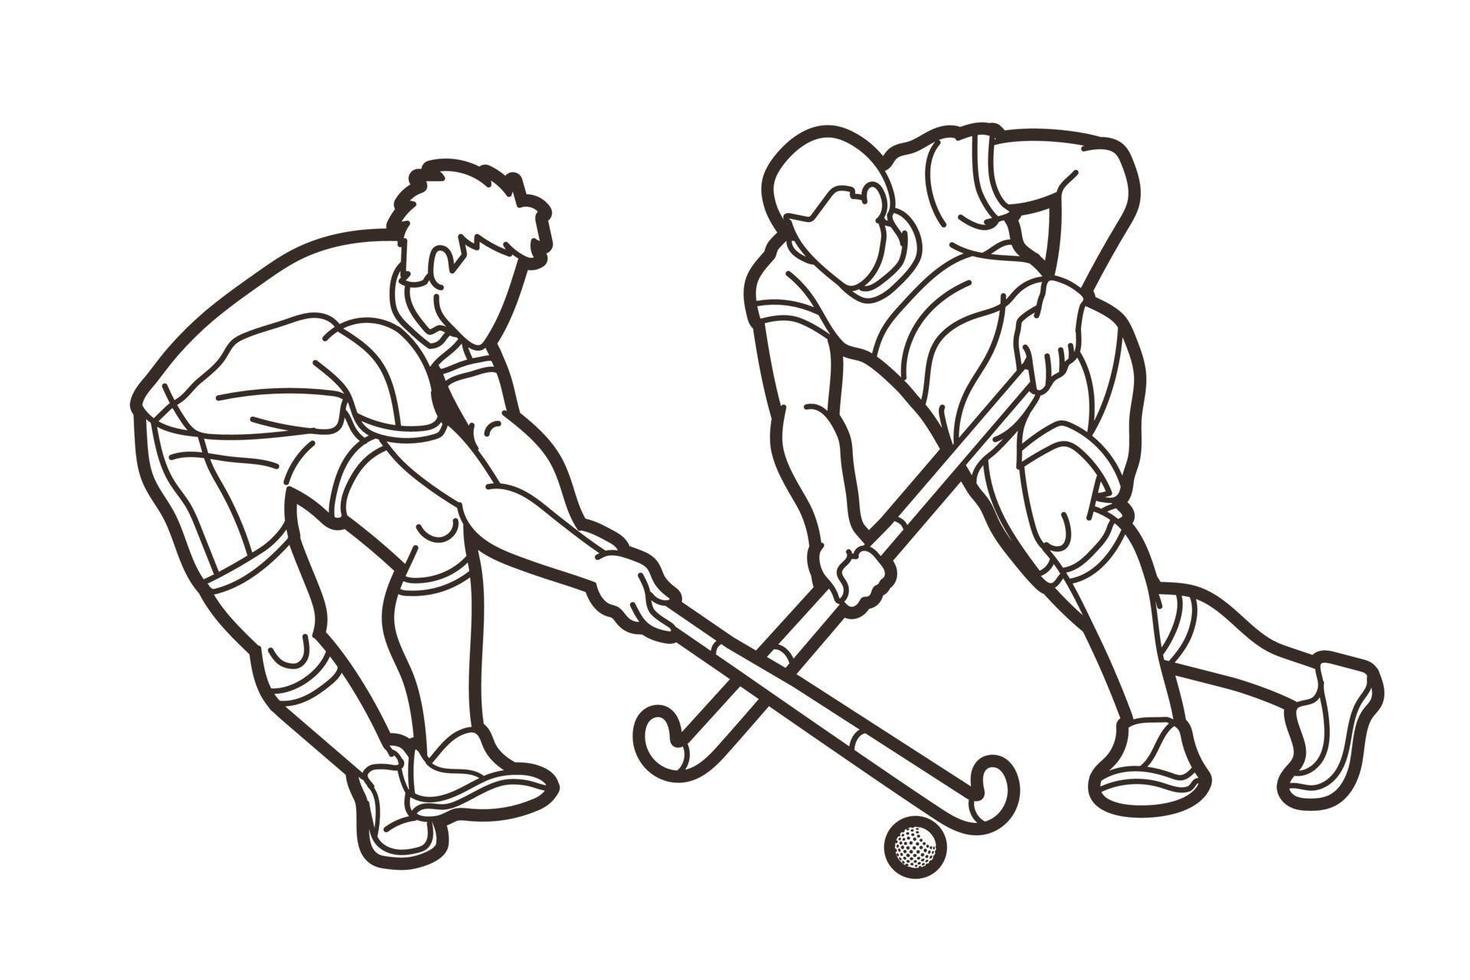 översikt fält hockey sport manlig spelare vektor